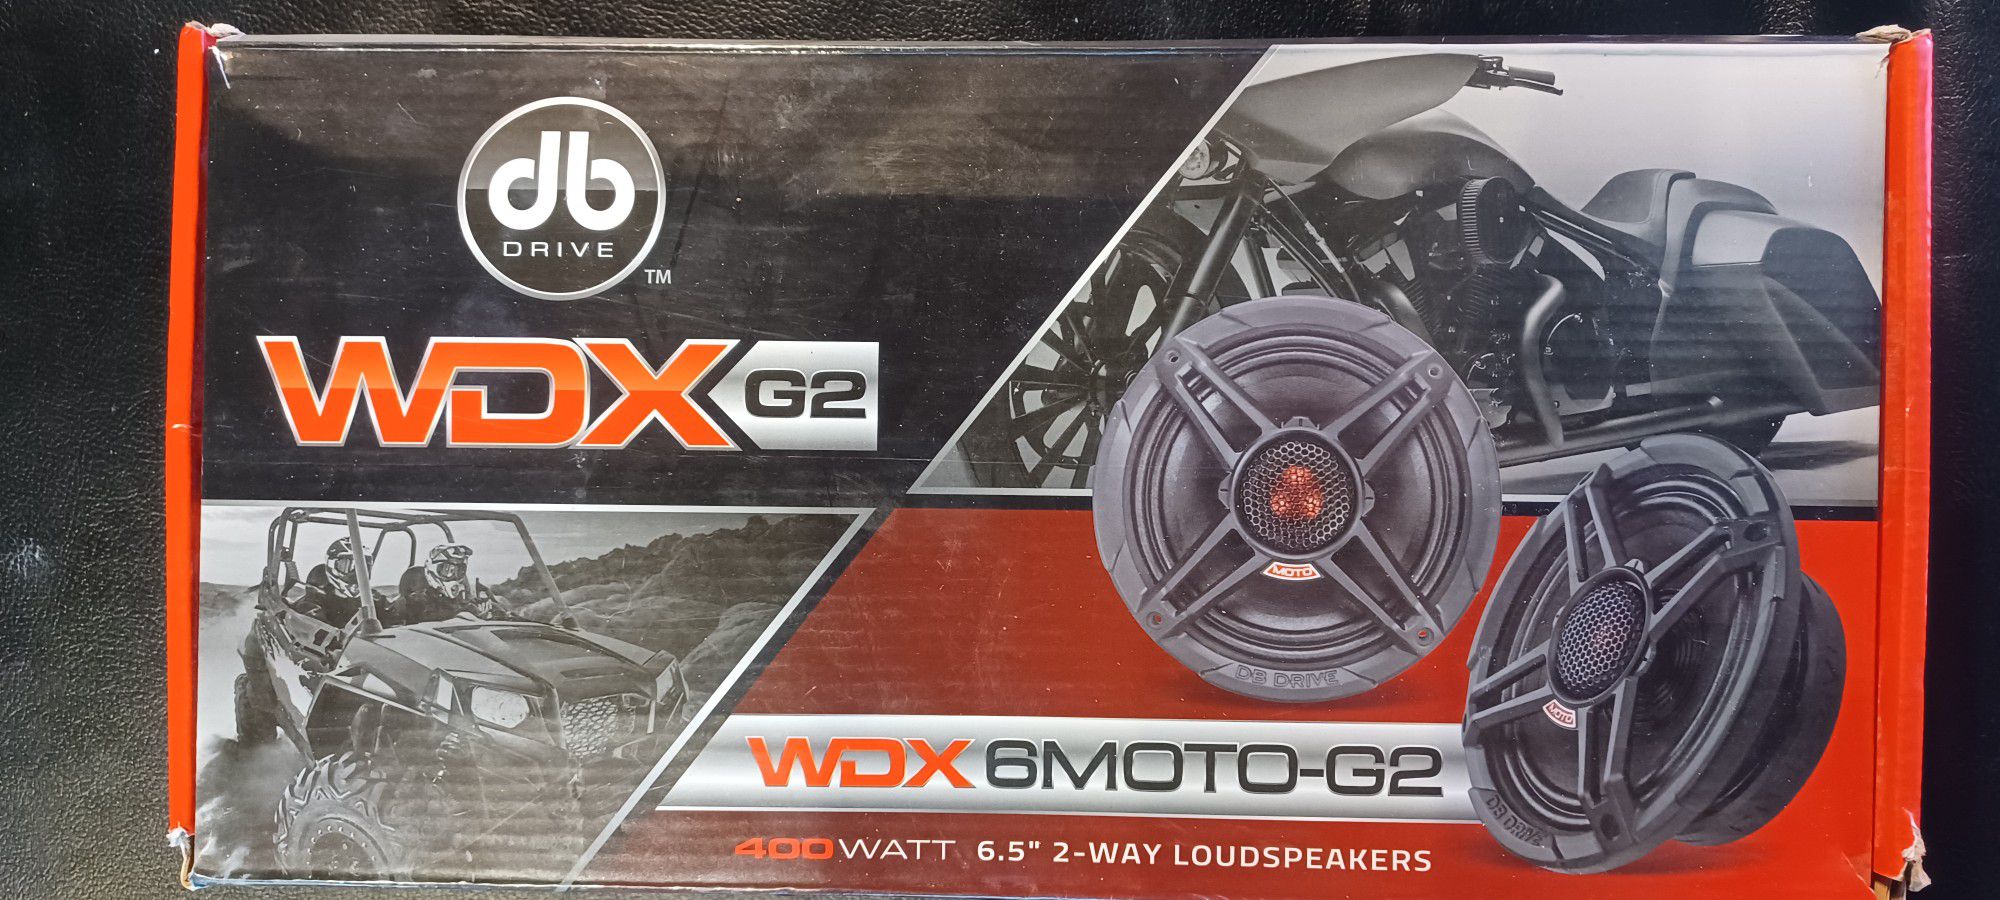 DB Drive WDXG2 Motorcycle Speakers